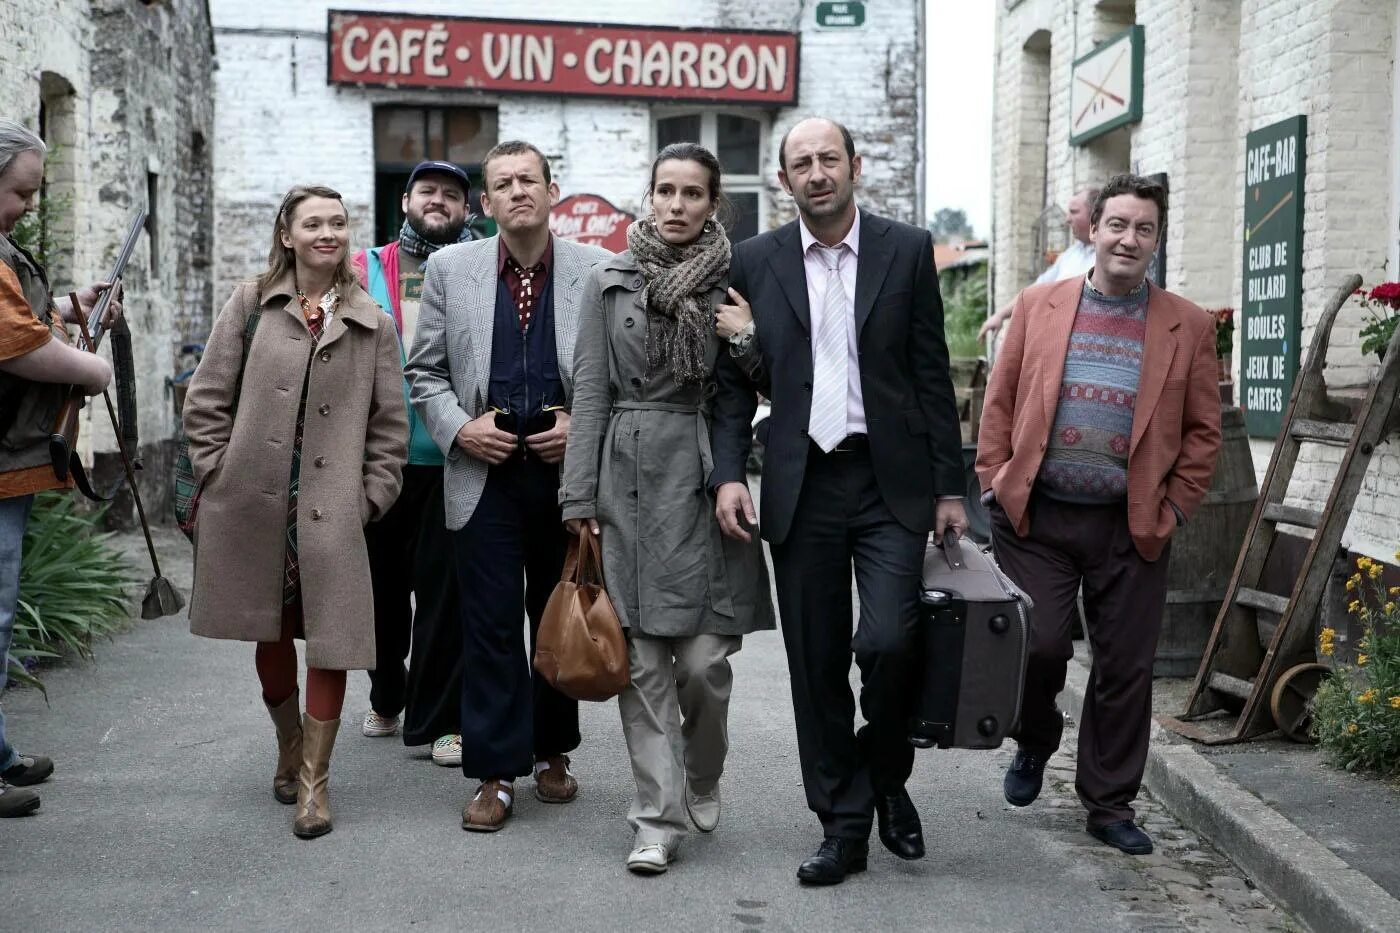 Хорошие добрые комедии. Бобро поржаловать / Bienvenue chez les Ch'tis (2008). Бобро поржаловать Антуан.